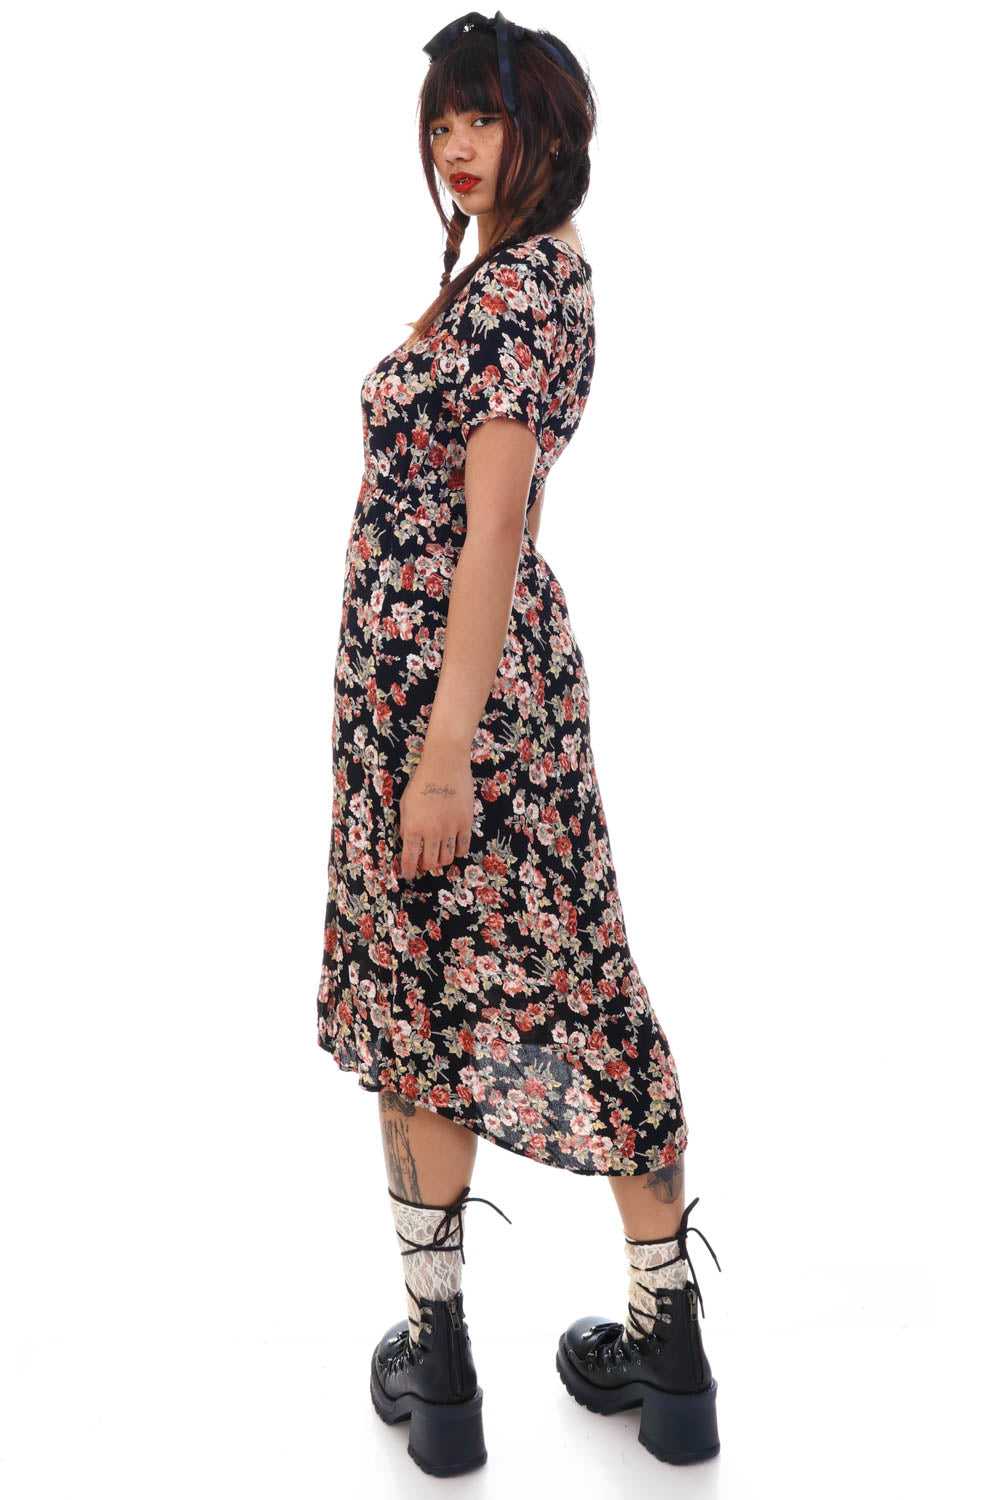 Vintage Y2K Grunge Floral Slit Dress - S/M - image 6